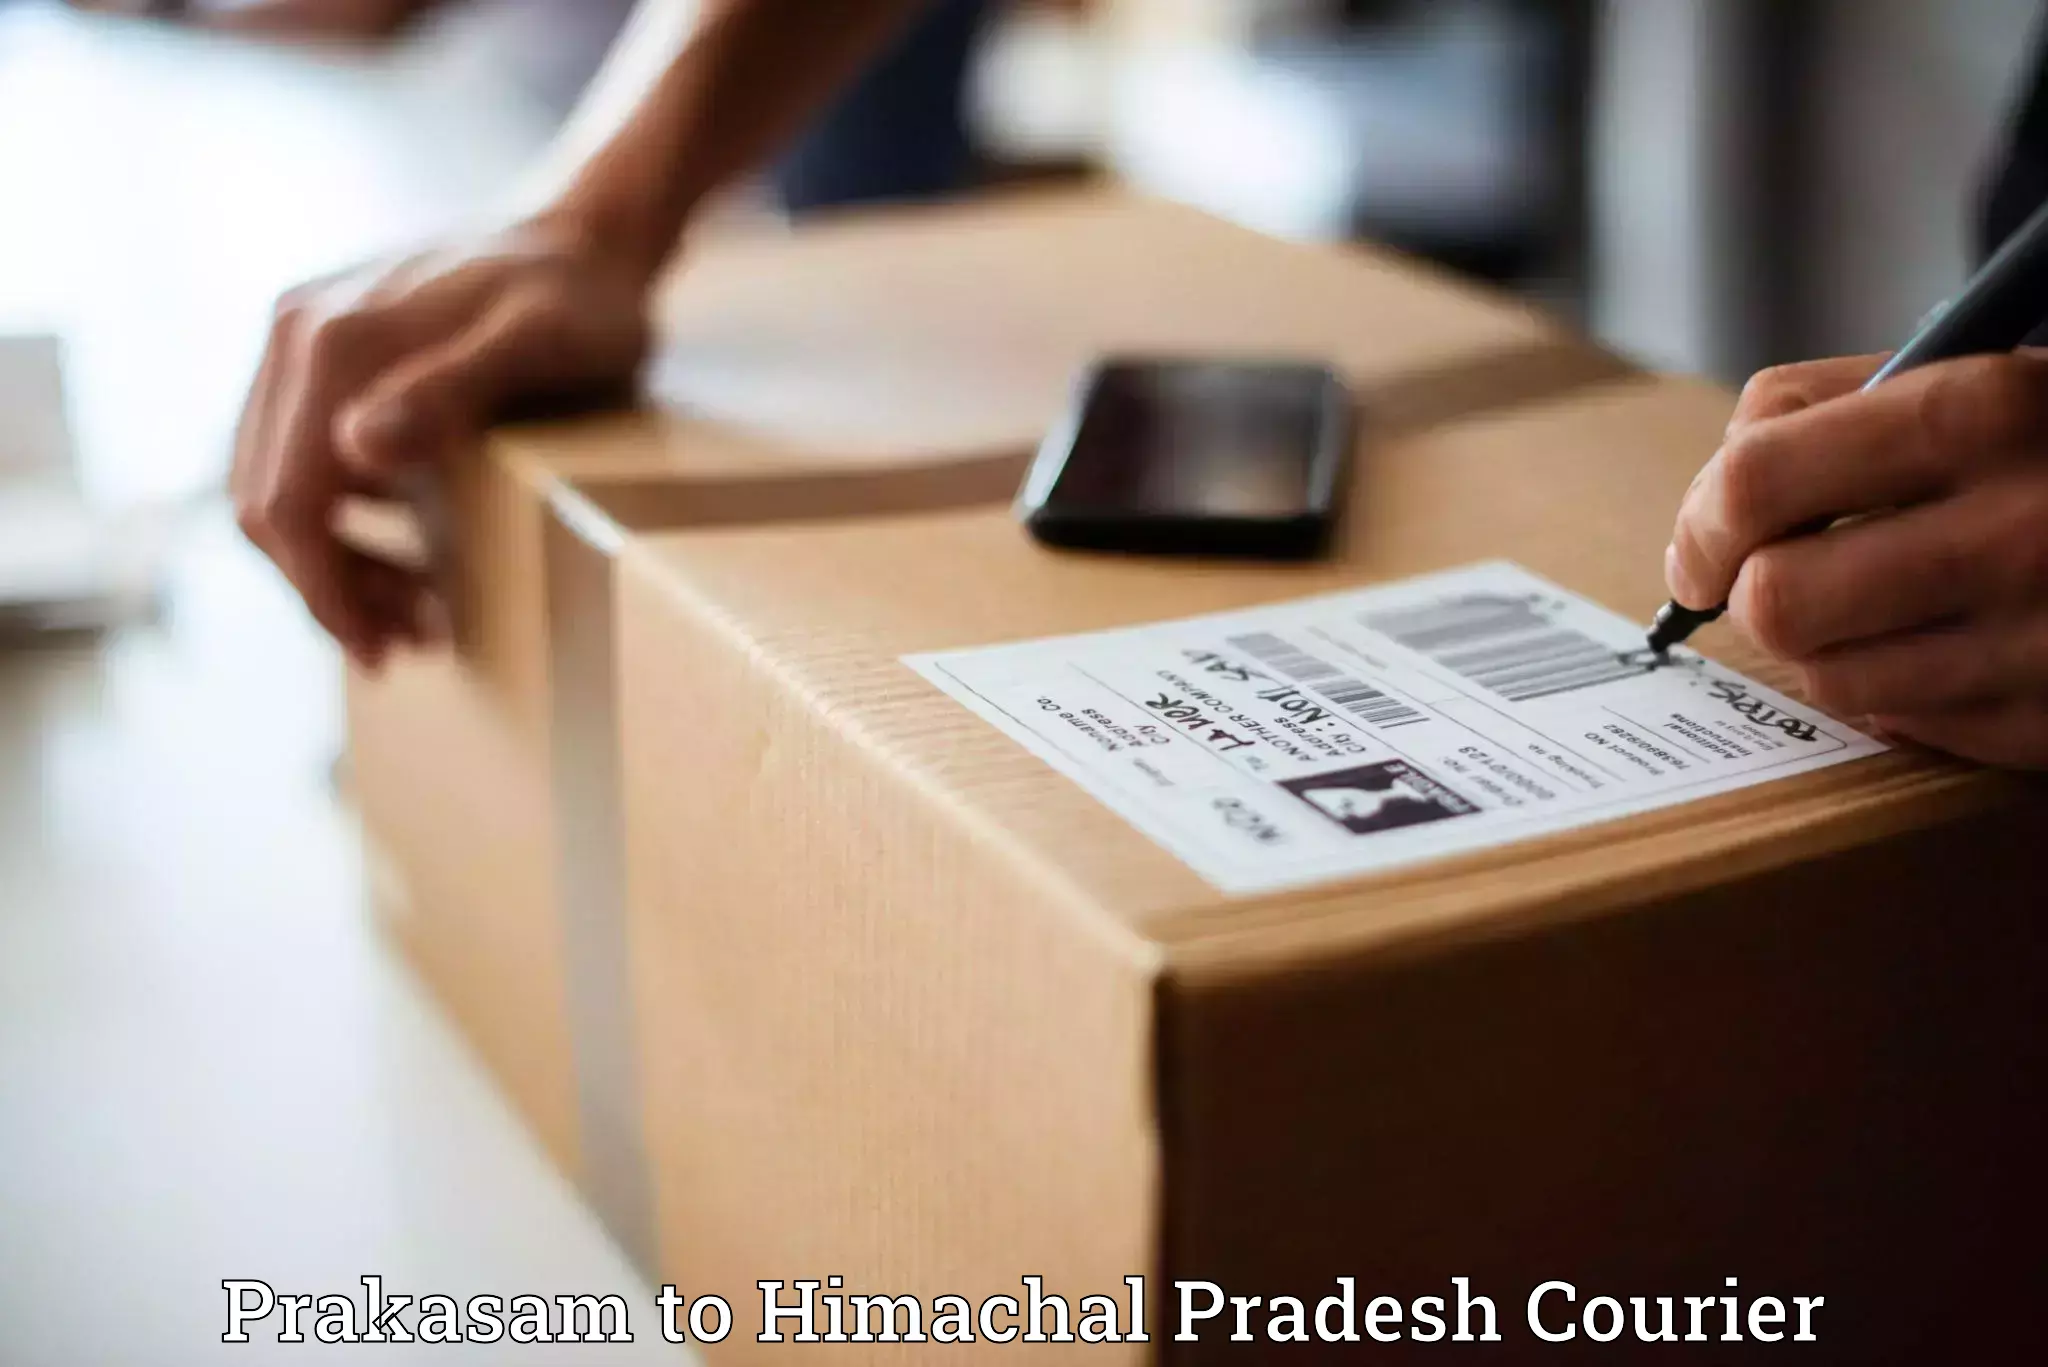 Package tracking in Prakasam to Ranital